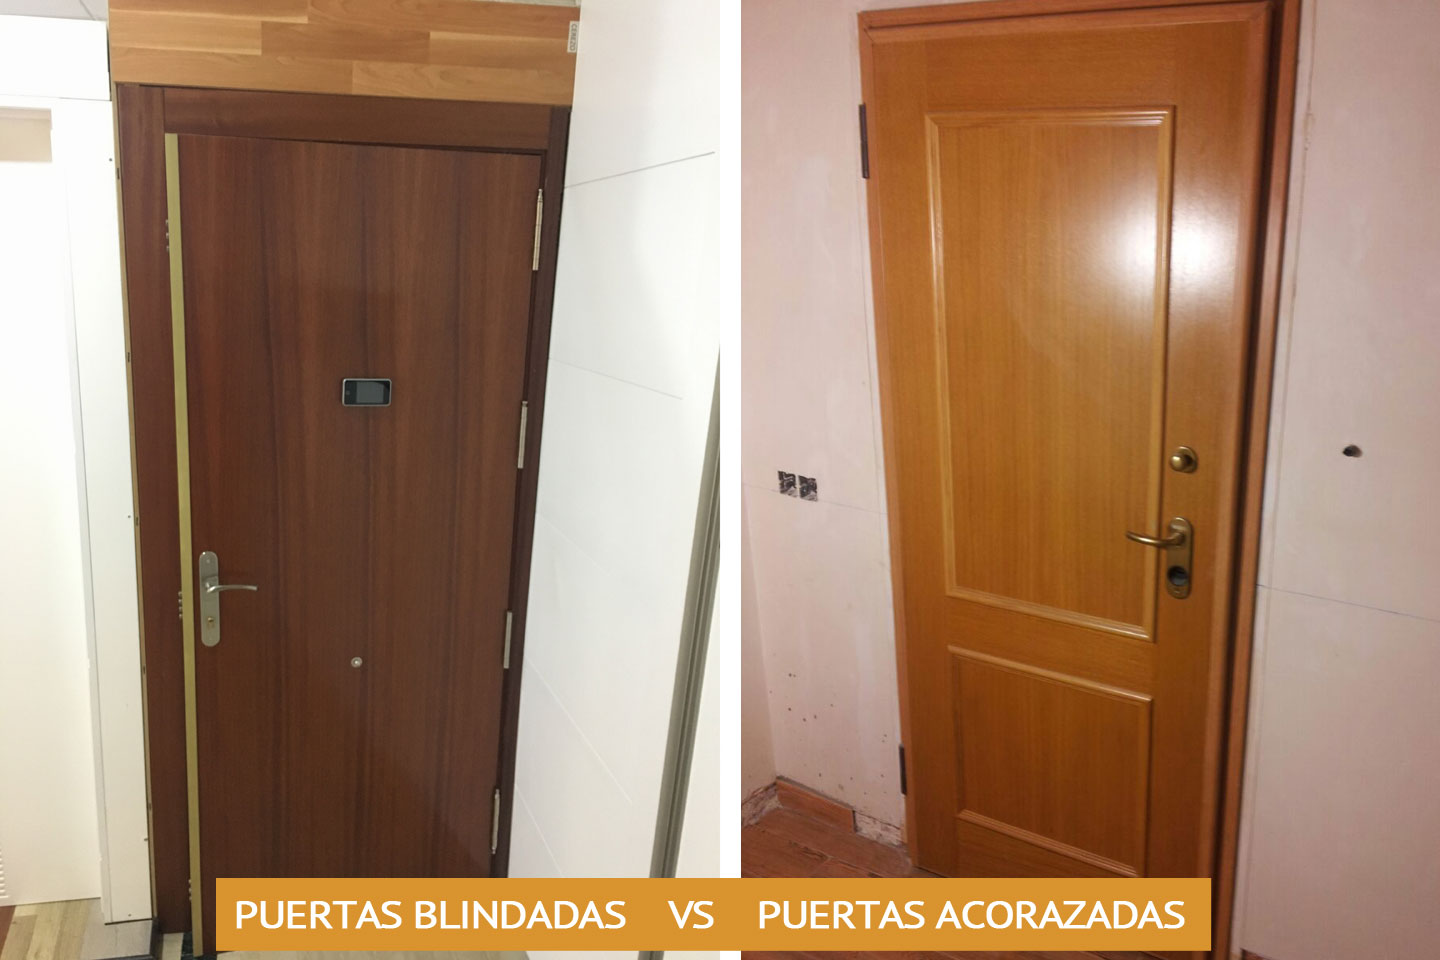 comparativa de características de puertas blindadas contra puertas acorazadas